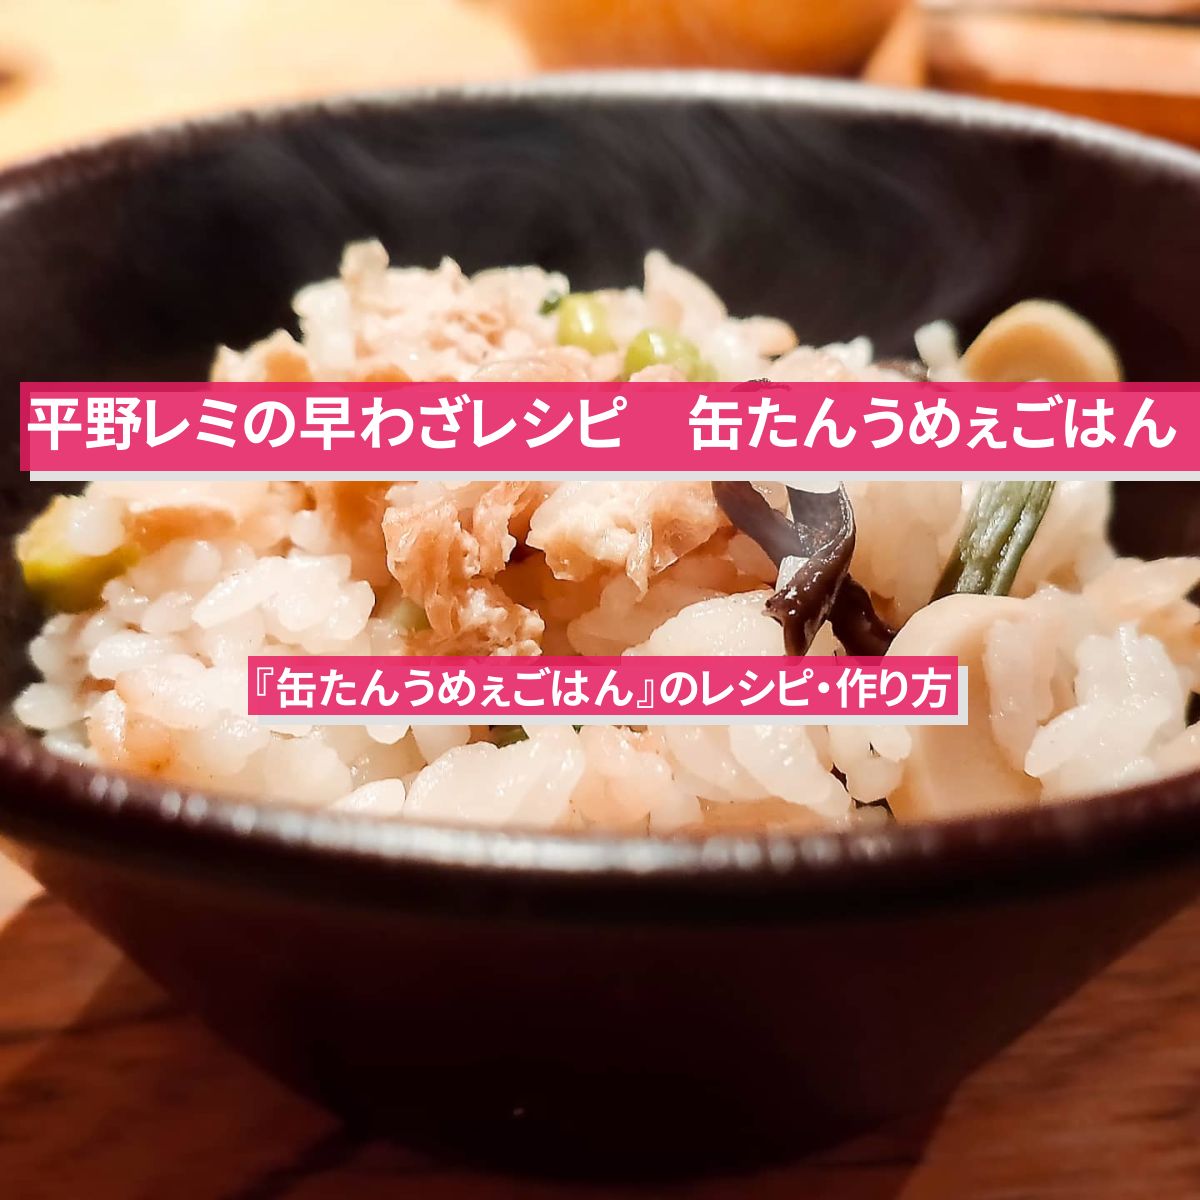 【平野レミの早わざレシピ】『缶たんうめぇごはん』のレシピ・作り方